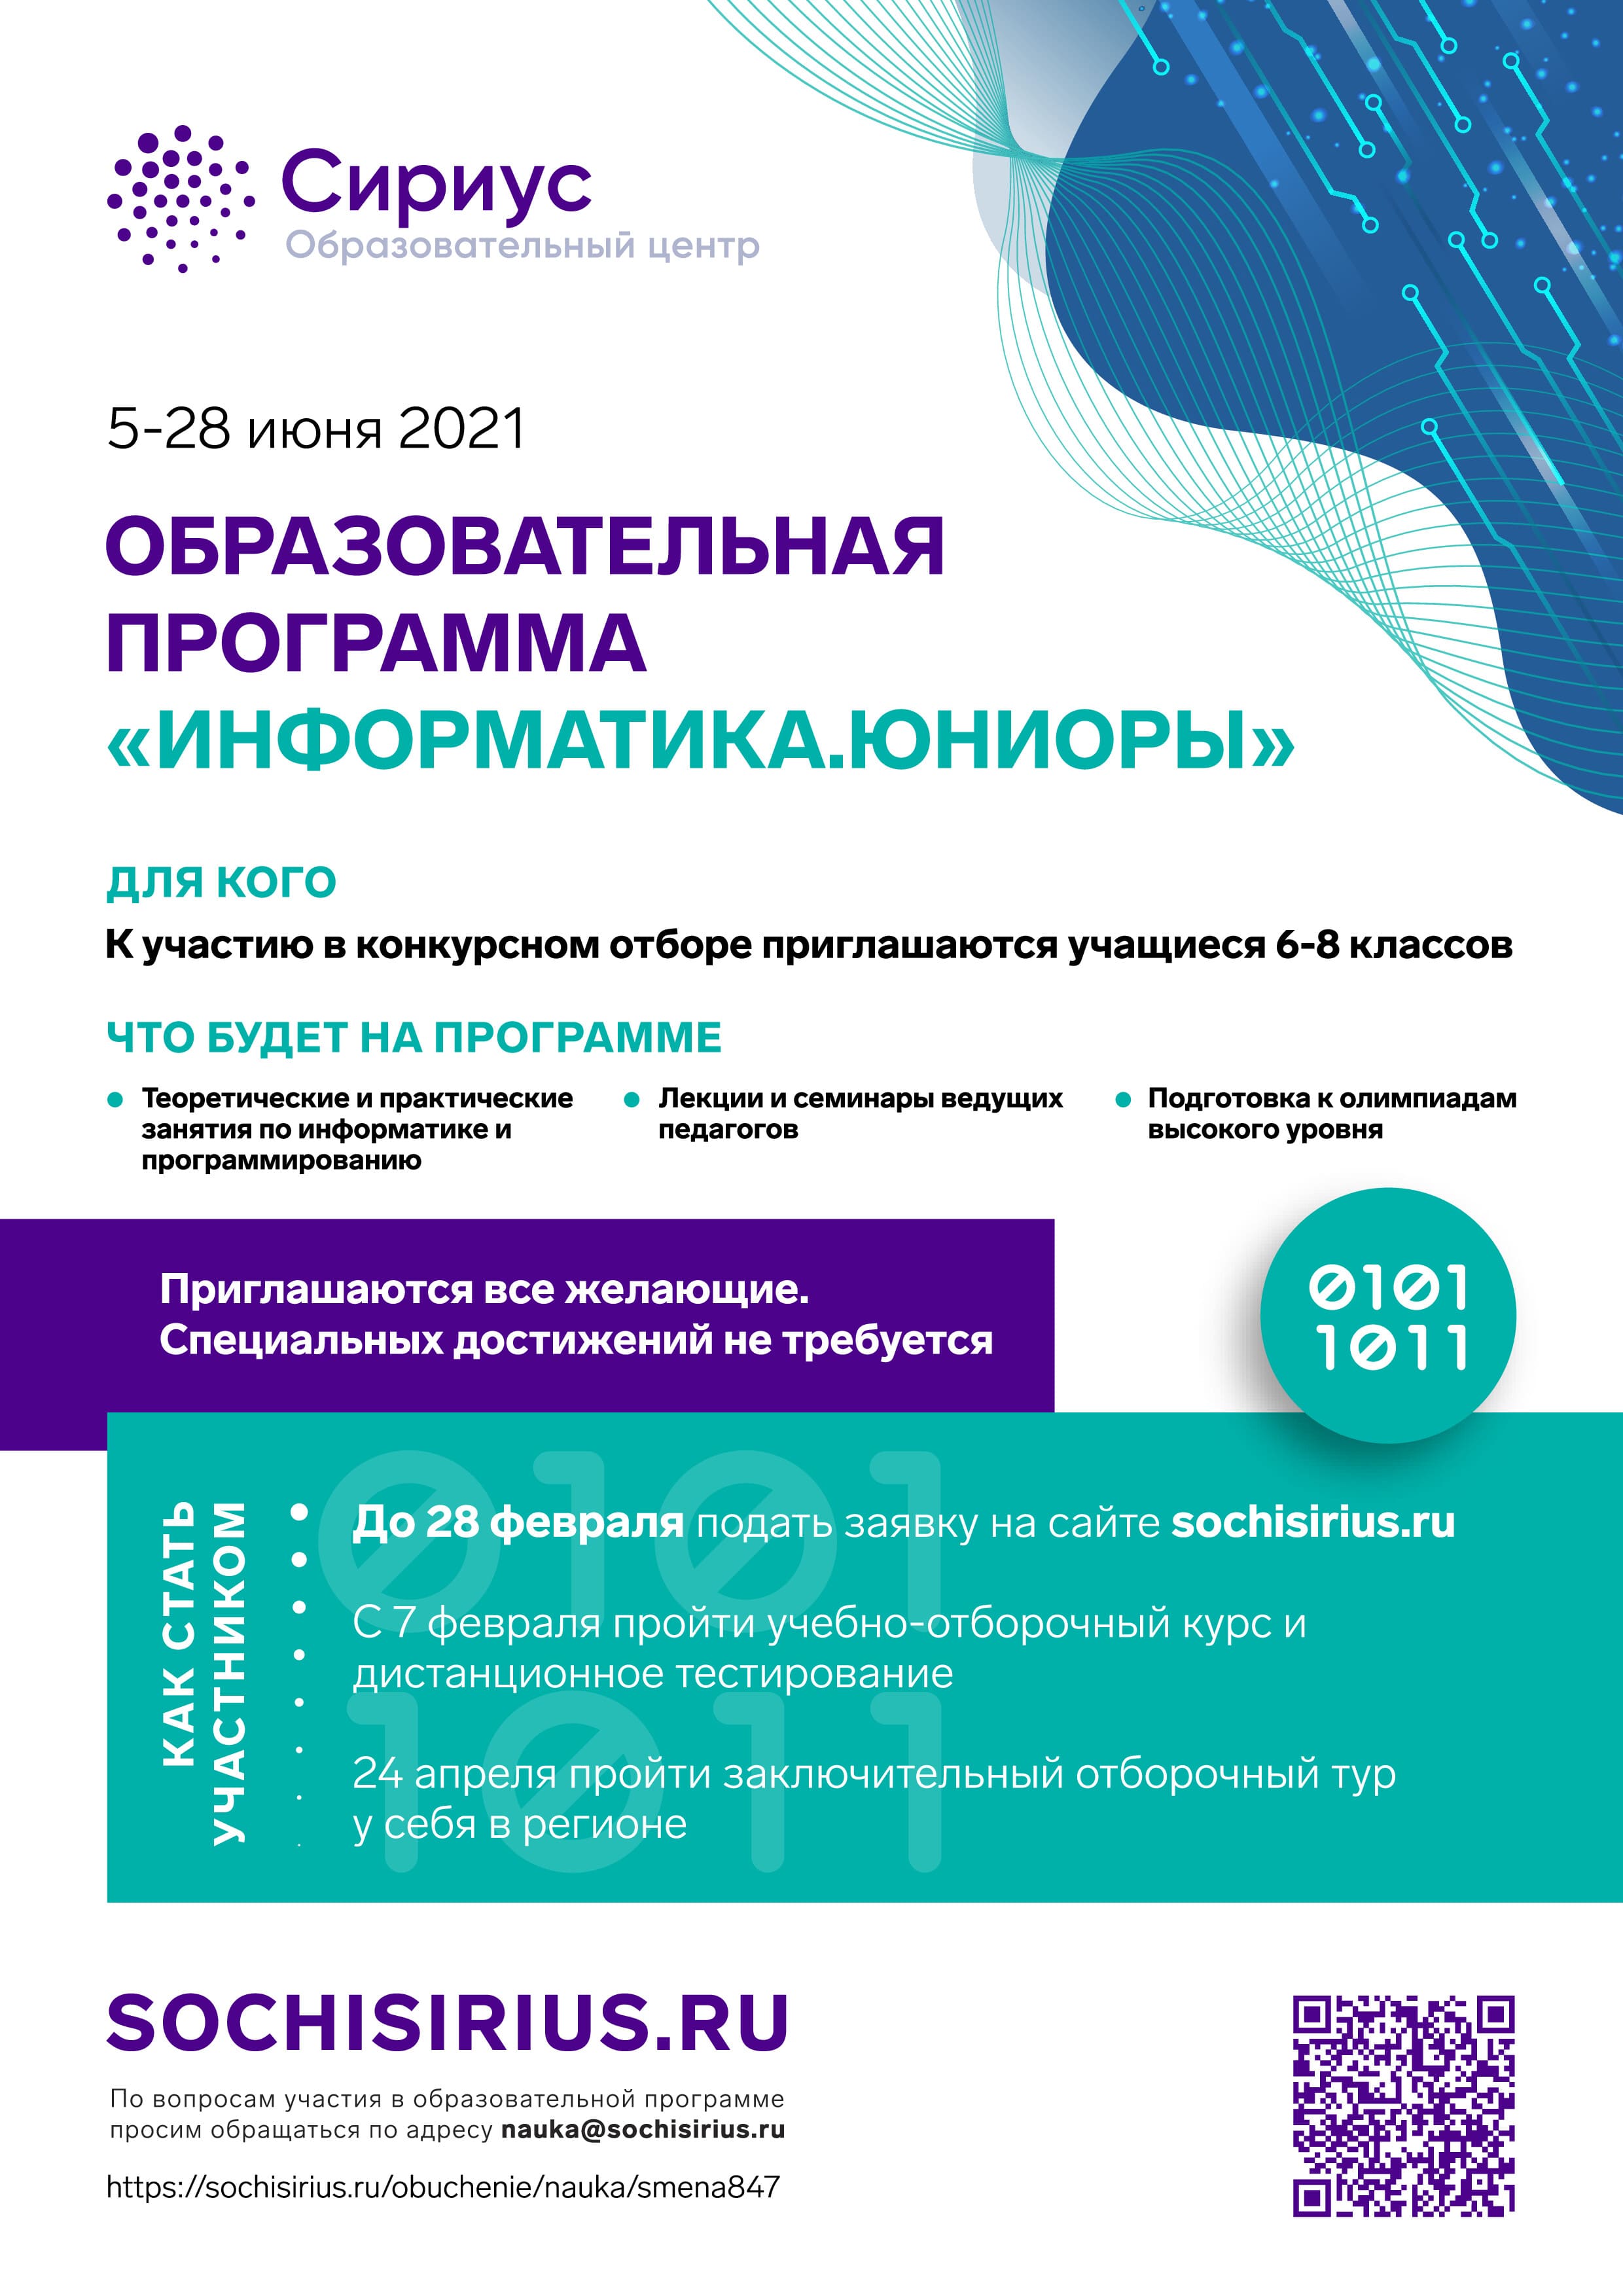 Информационный постер информатика pdf.io 1